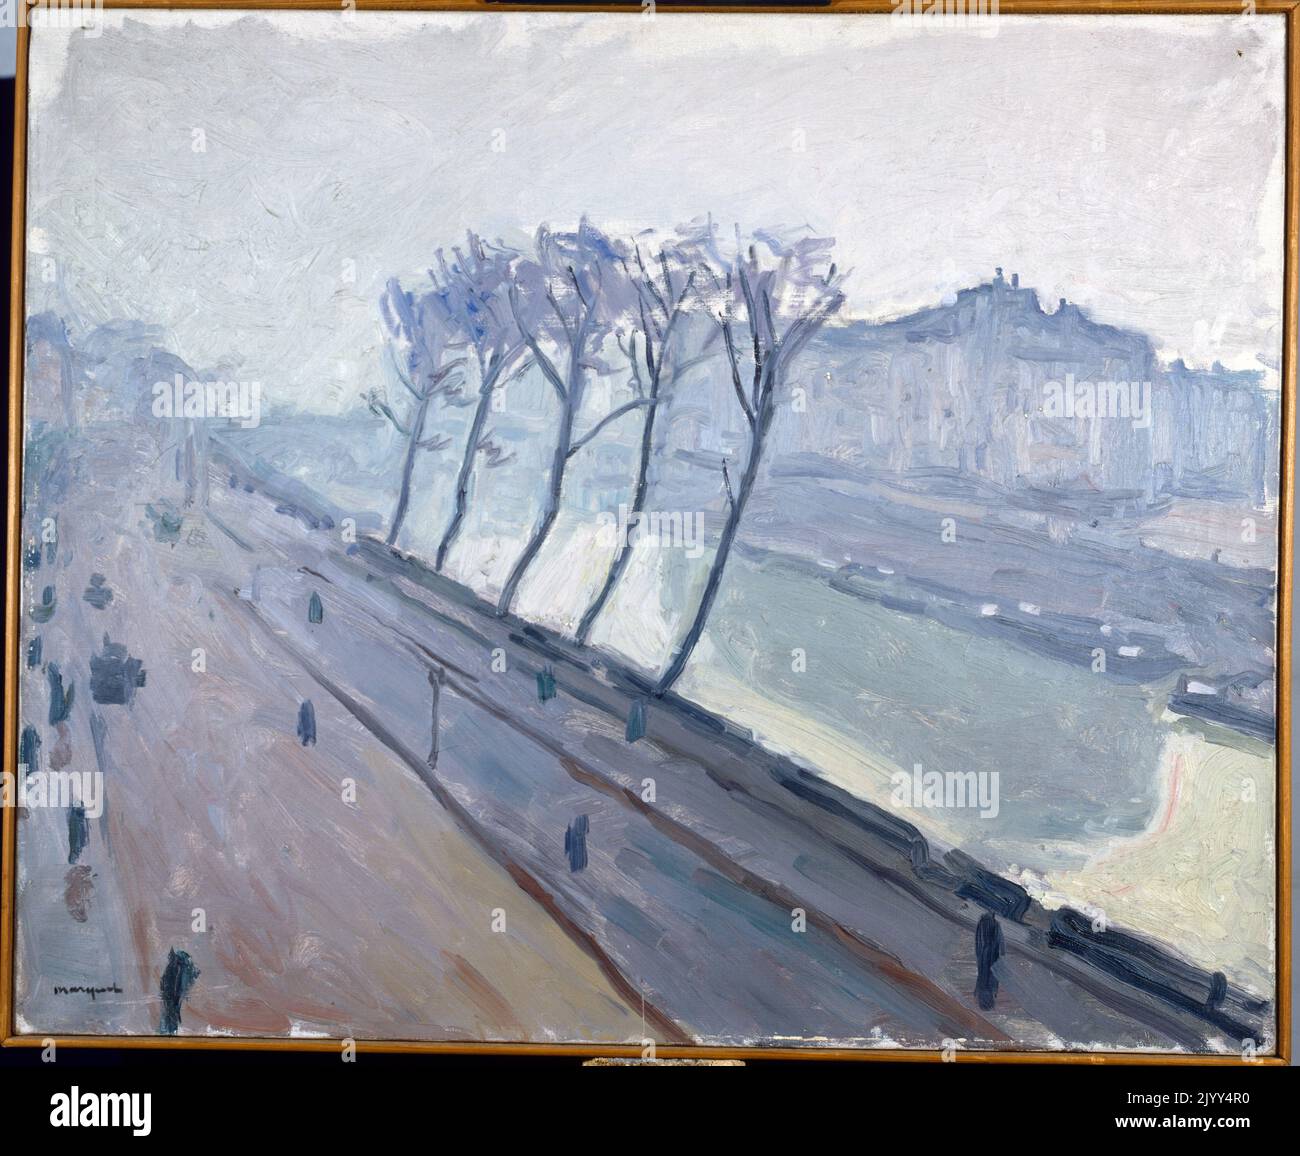 Quai de la seine ein Paris von Albert Marquet (1875 - 1947), französischer Maler, der mit der Fauvistischen Bewegung in Verbindung gebracht wurde. Öl auf Leinwand; um 1908 Stockfoto